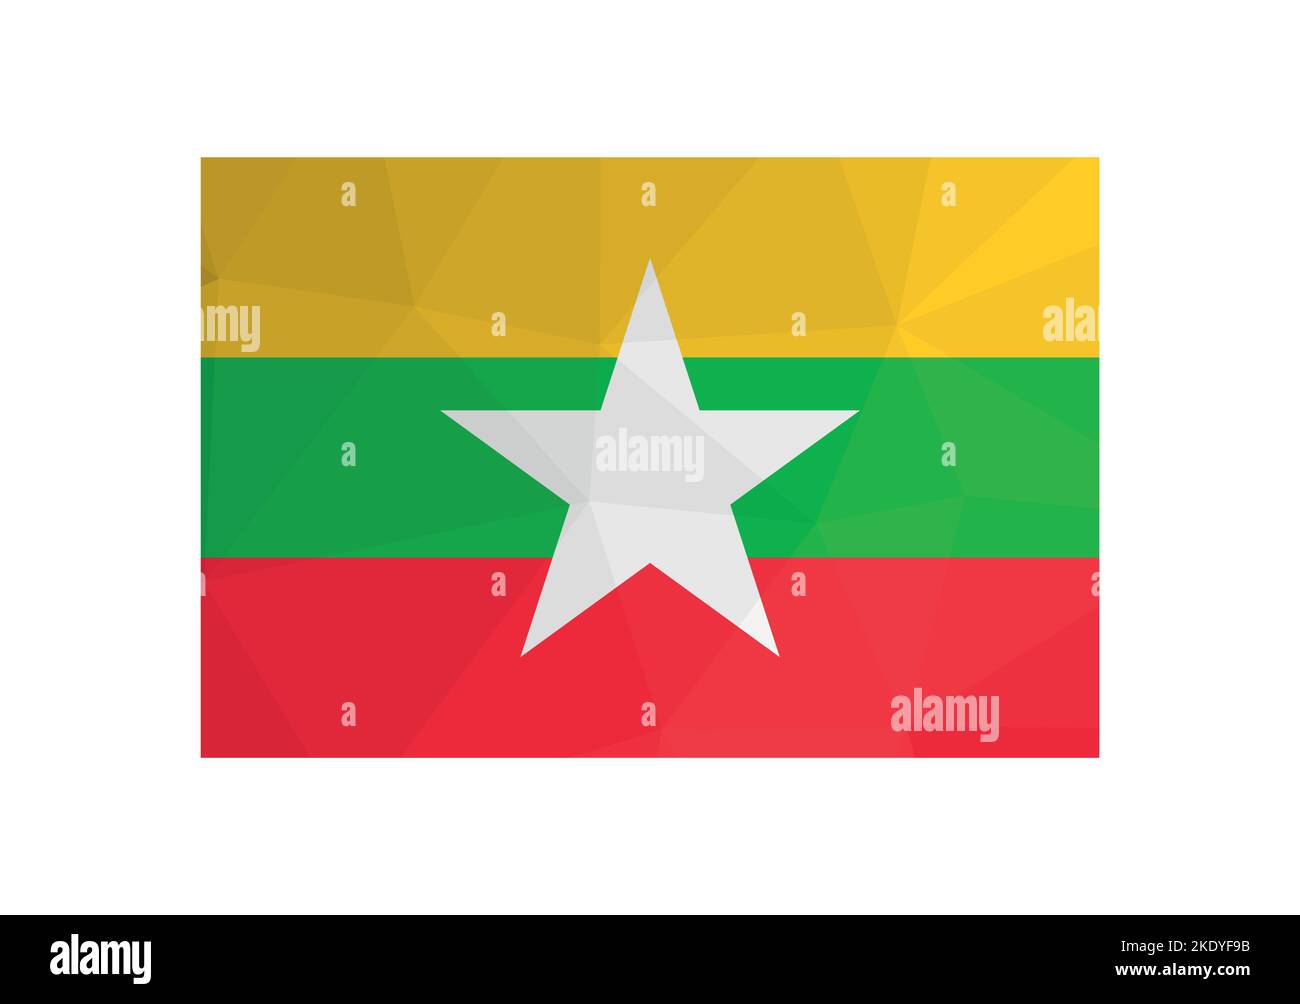 Illustration vectorielle. Symbole officiel du Myanmar. Drapeau national birman avec des bandes jaunes, vertes, rouges et une étoile blanche. Design créatif en polyester bas Illustration de Vecteur